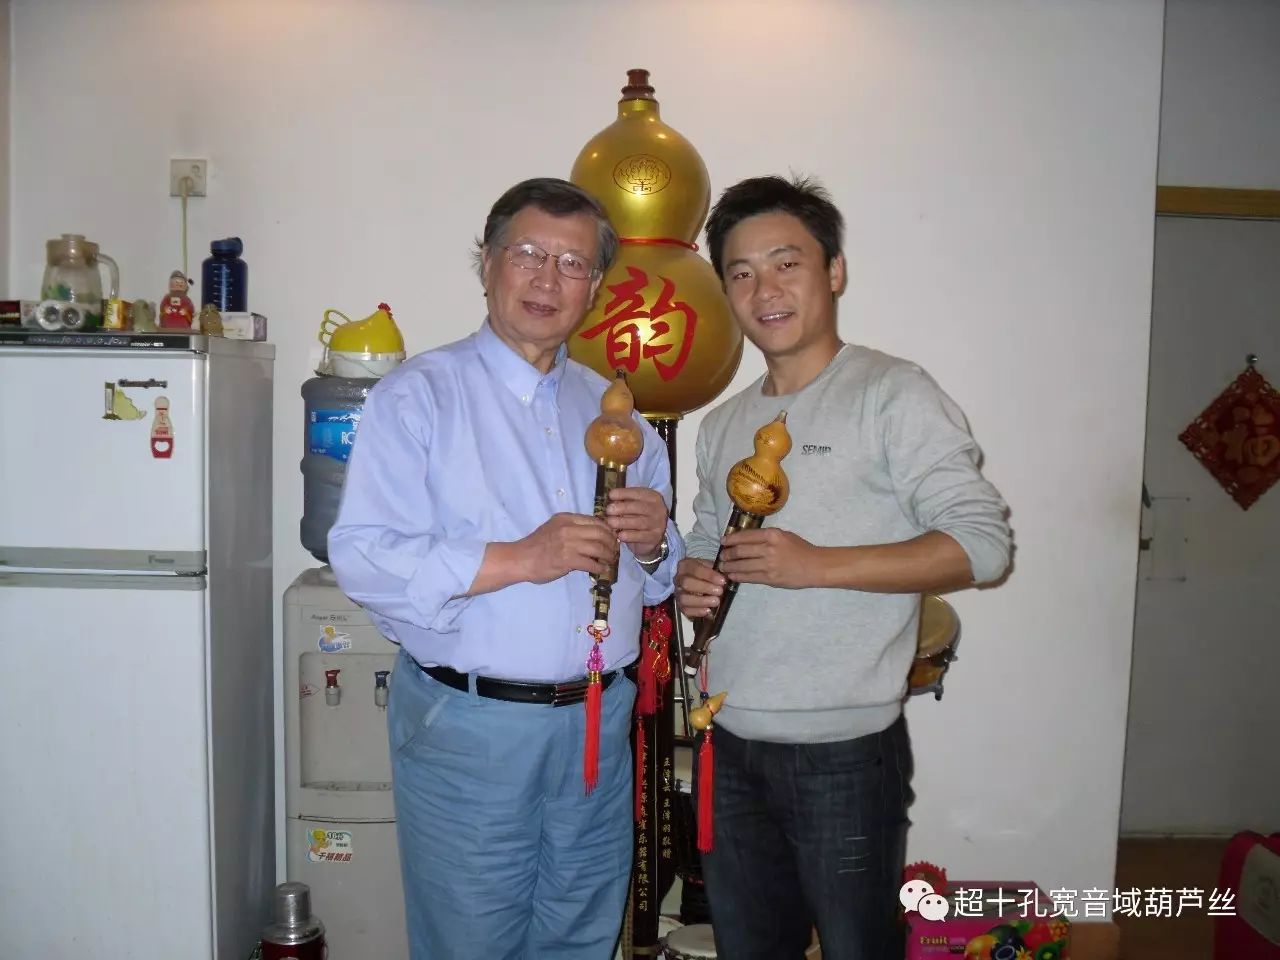 与著名葫芦丝艺术家哏德全和韩铁维老师合影于德宏 今天,在国庆节